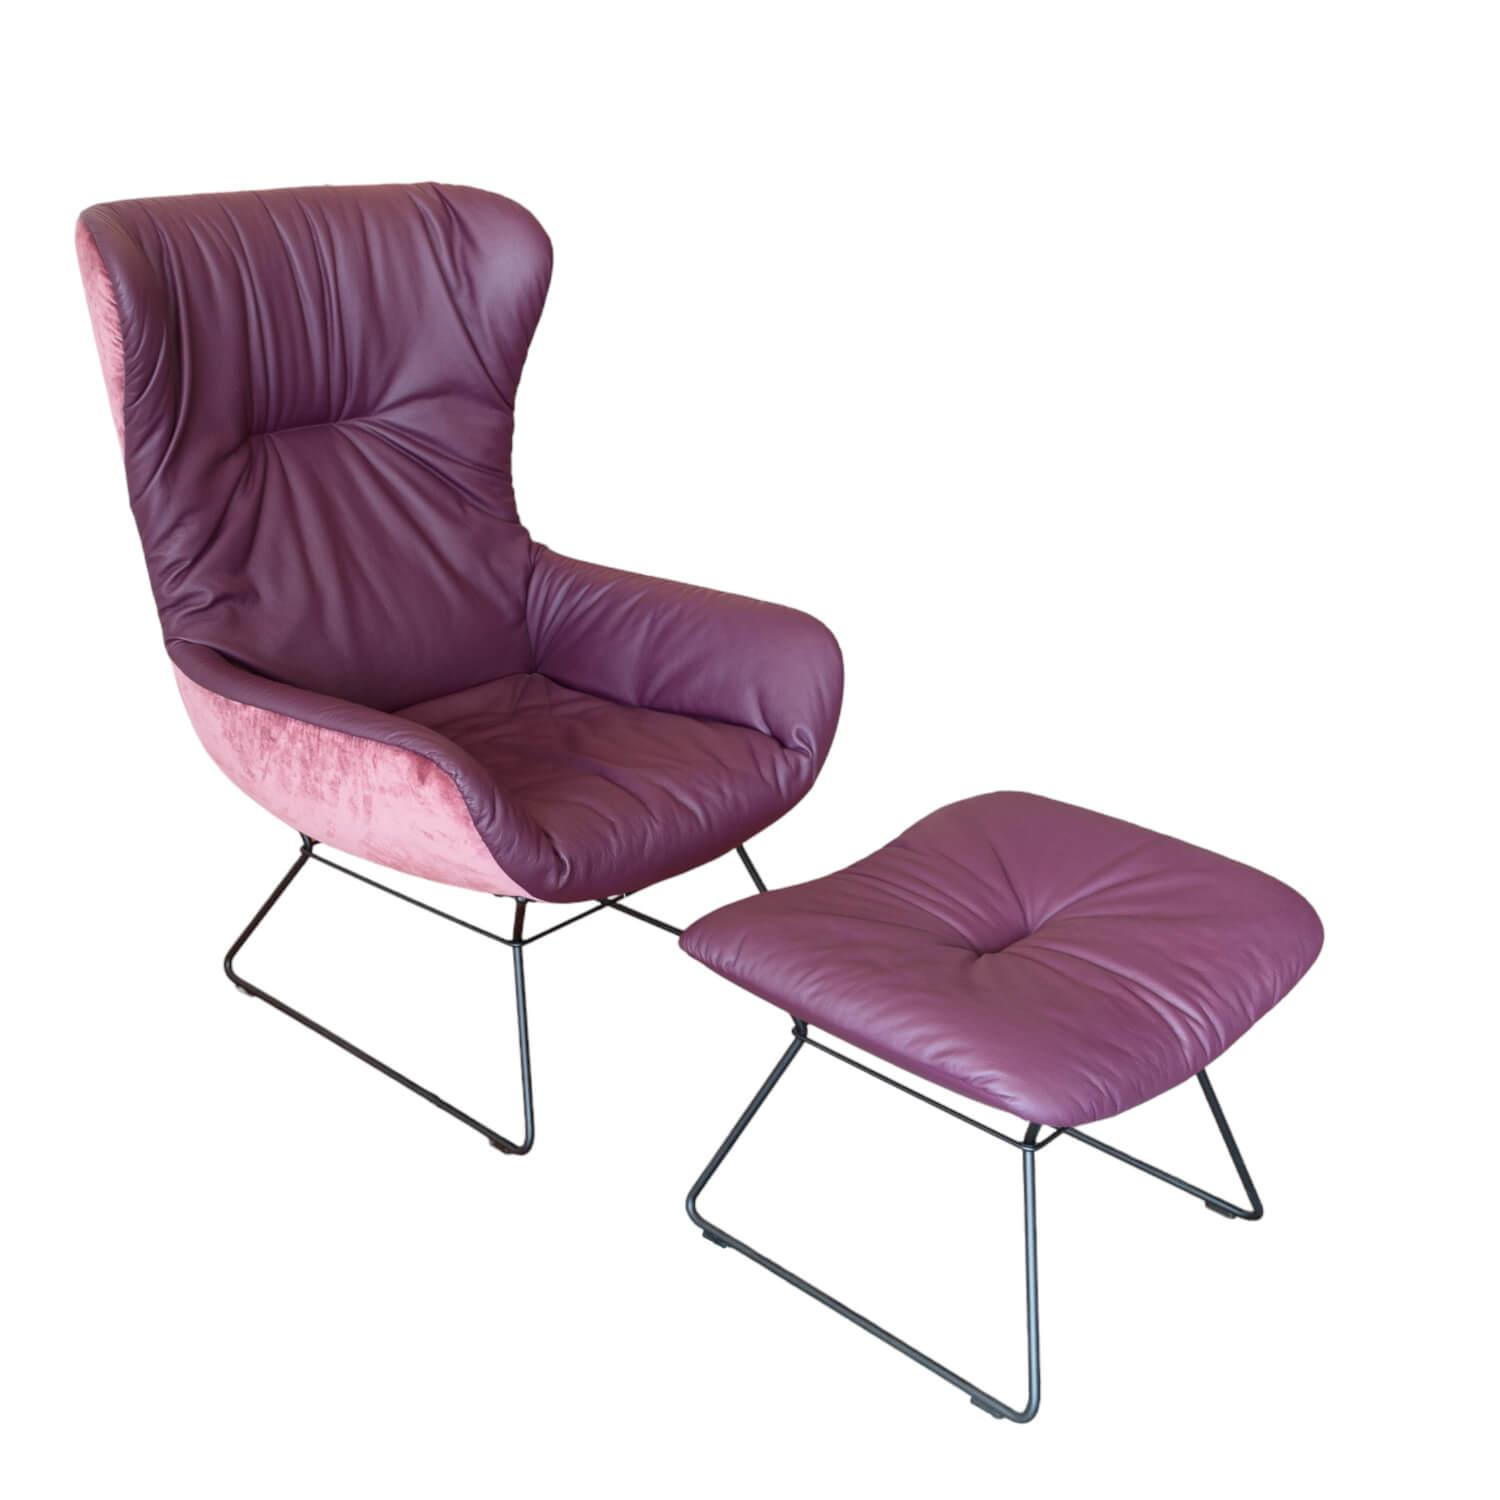 Sessel Wingback Chair Leya Innen Leder Elmosoft 75010 Außen Stoff Avalon 75010 Violett Drahtgestell Schwarz Inklusive Hocker